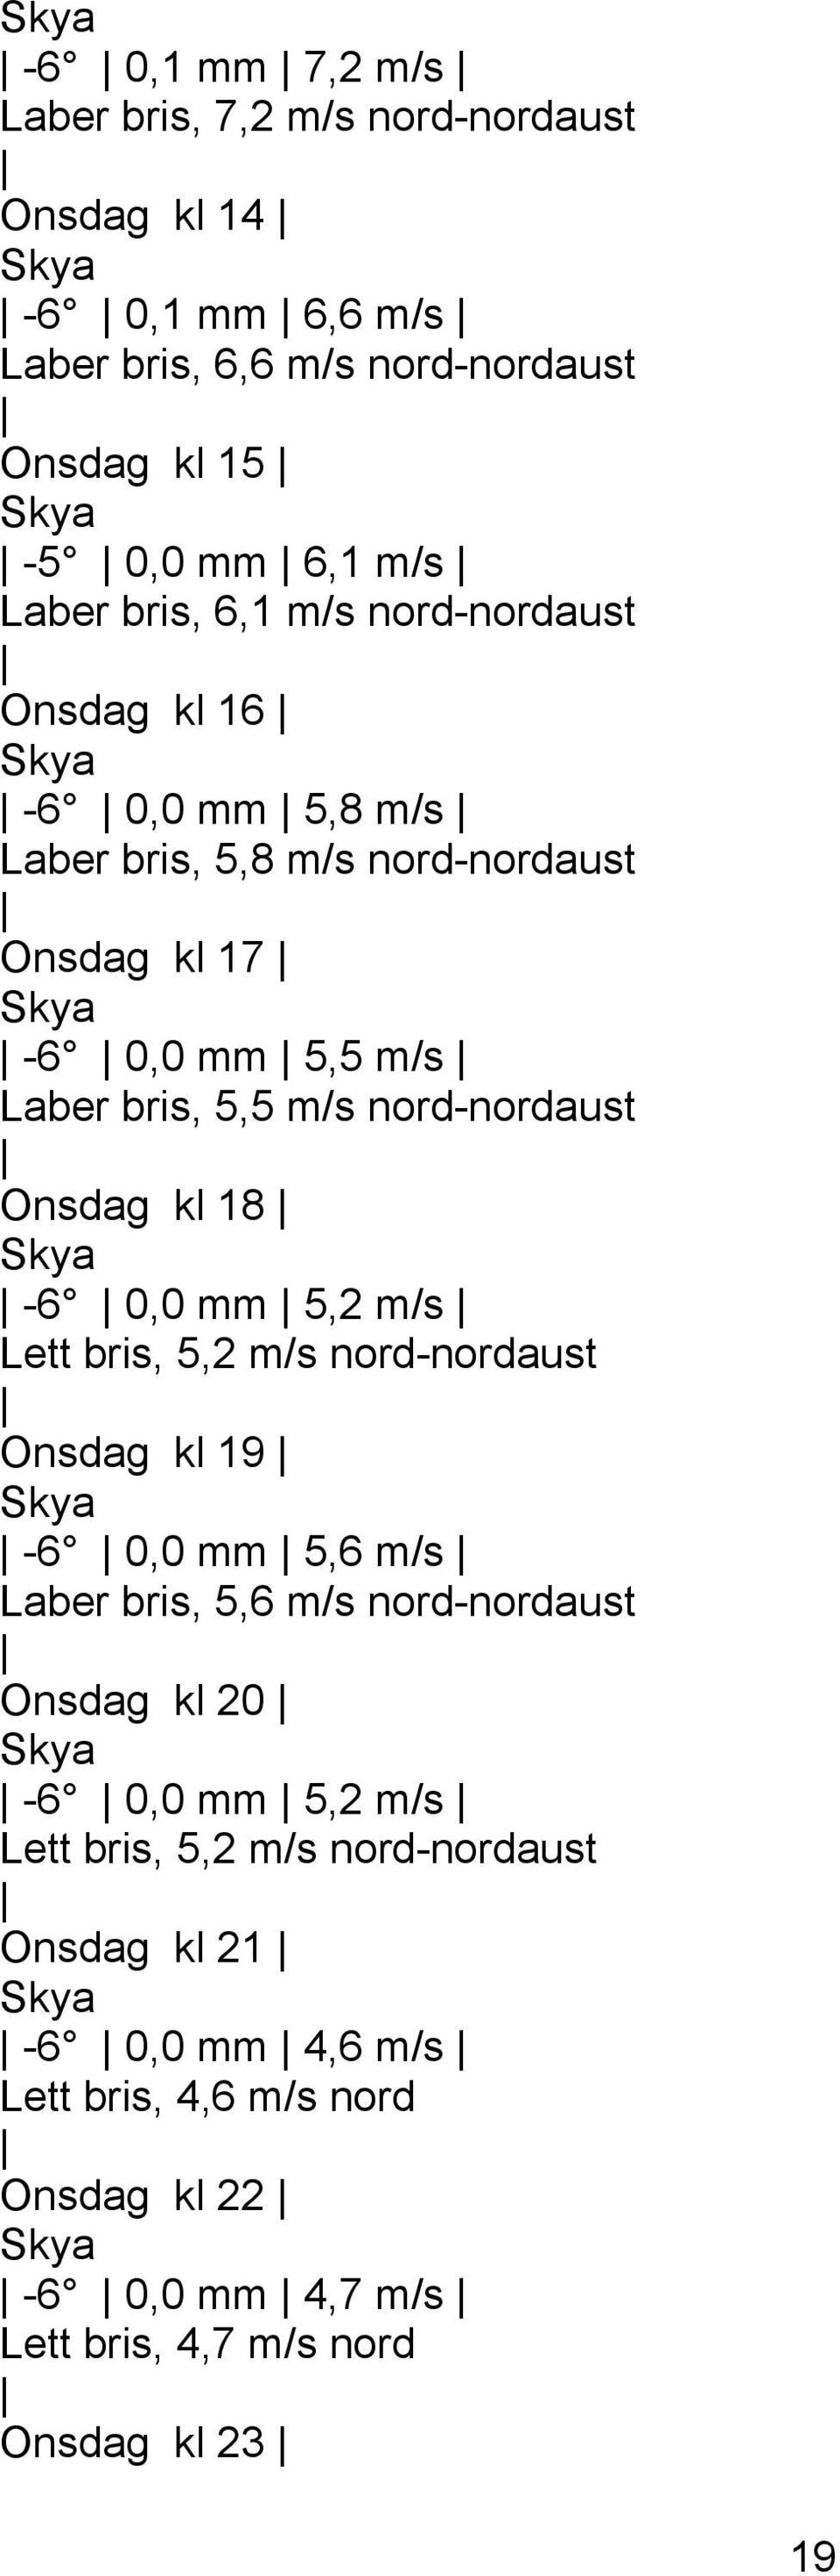 Onsdag kl 18 Skya -6 0,0 mm 5,2 m/s Lett bris, 5,2 m/s nord-nordaust Onsdag kl 19 Skya -6 0,0 mm 5,6 m/s Laber bris, 5,6 m/s nord-nordaust Onsdag kl 20 Skya -6 0,0 mm